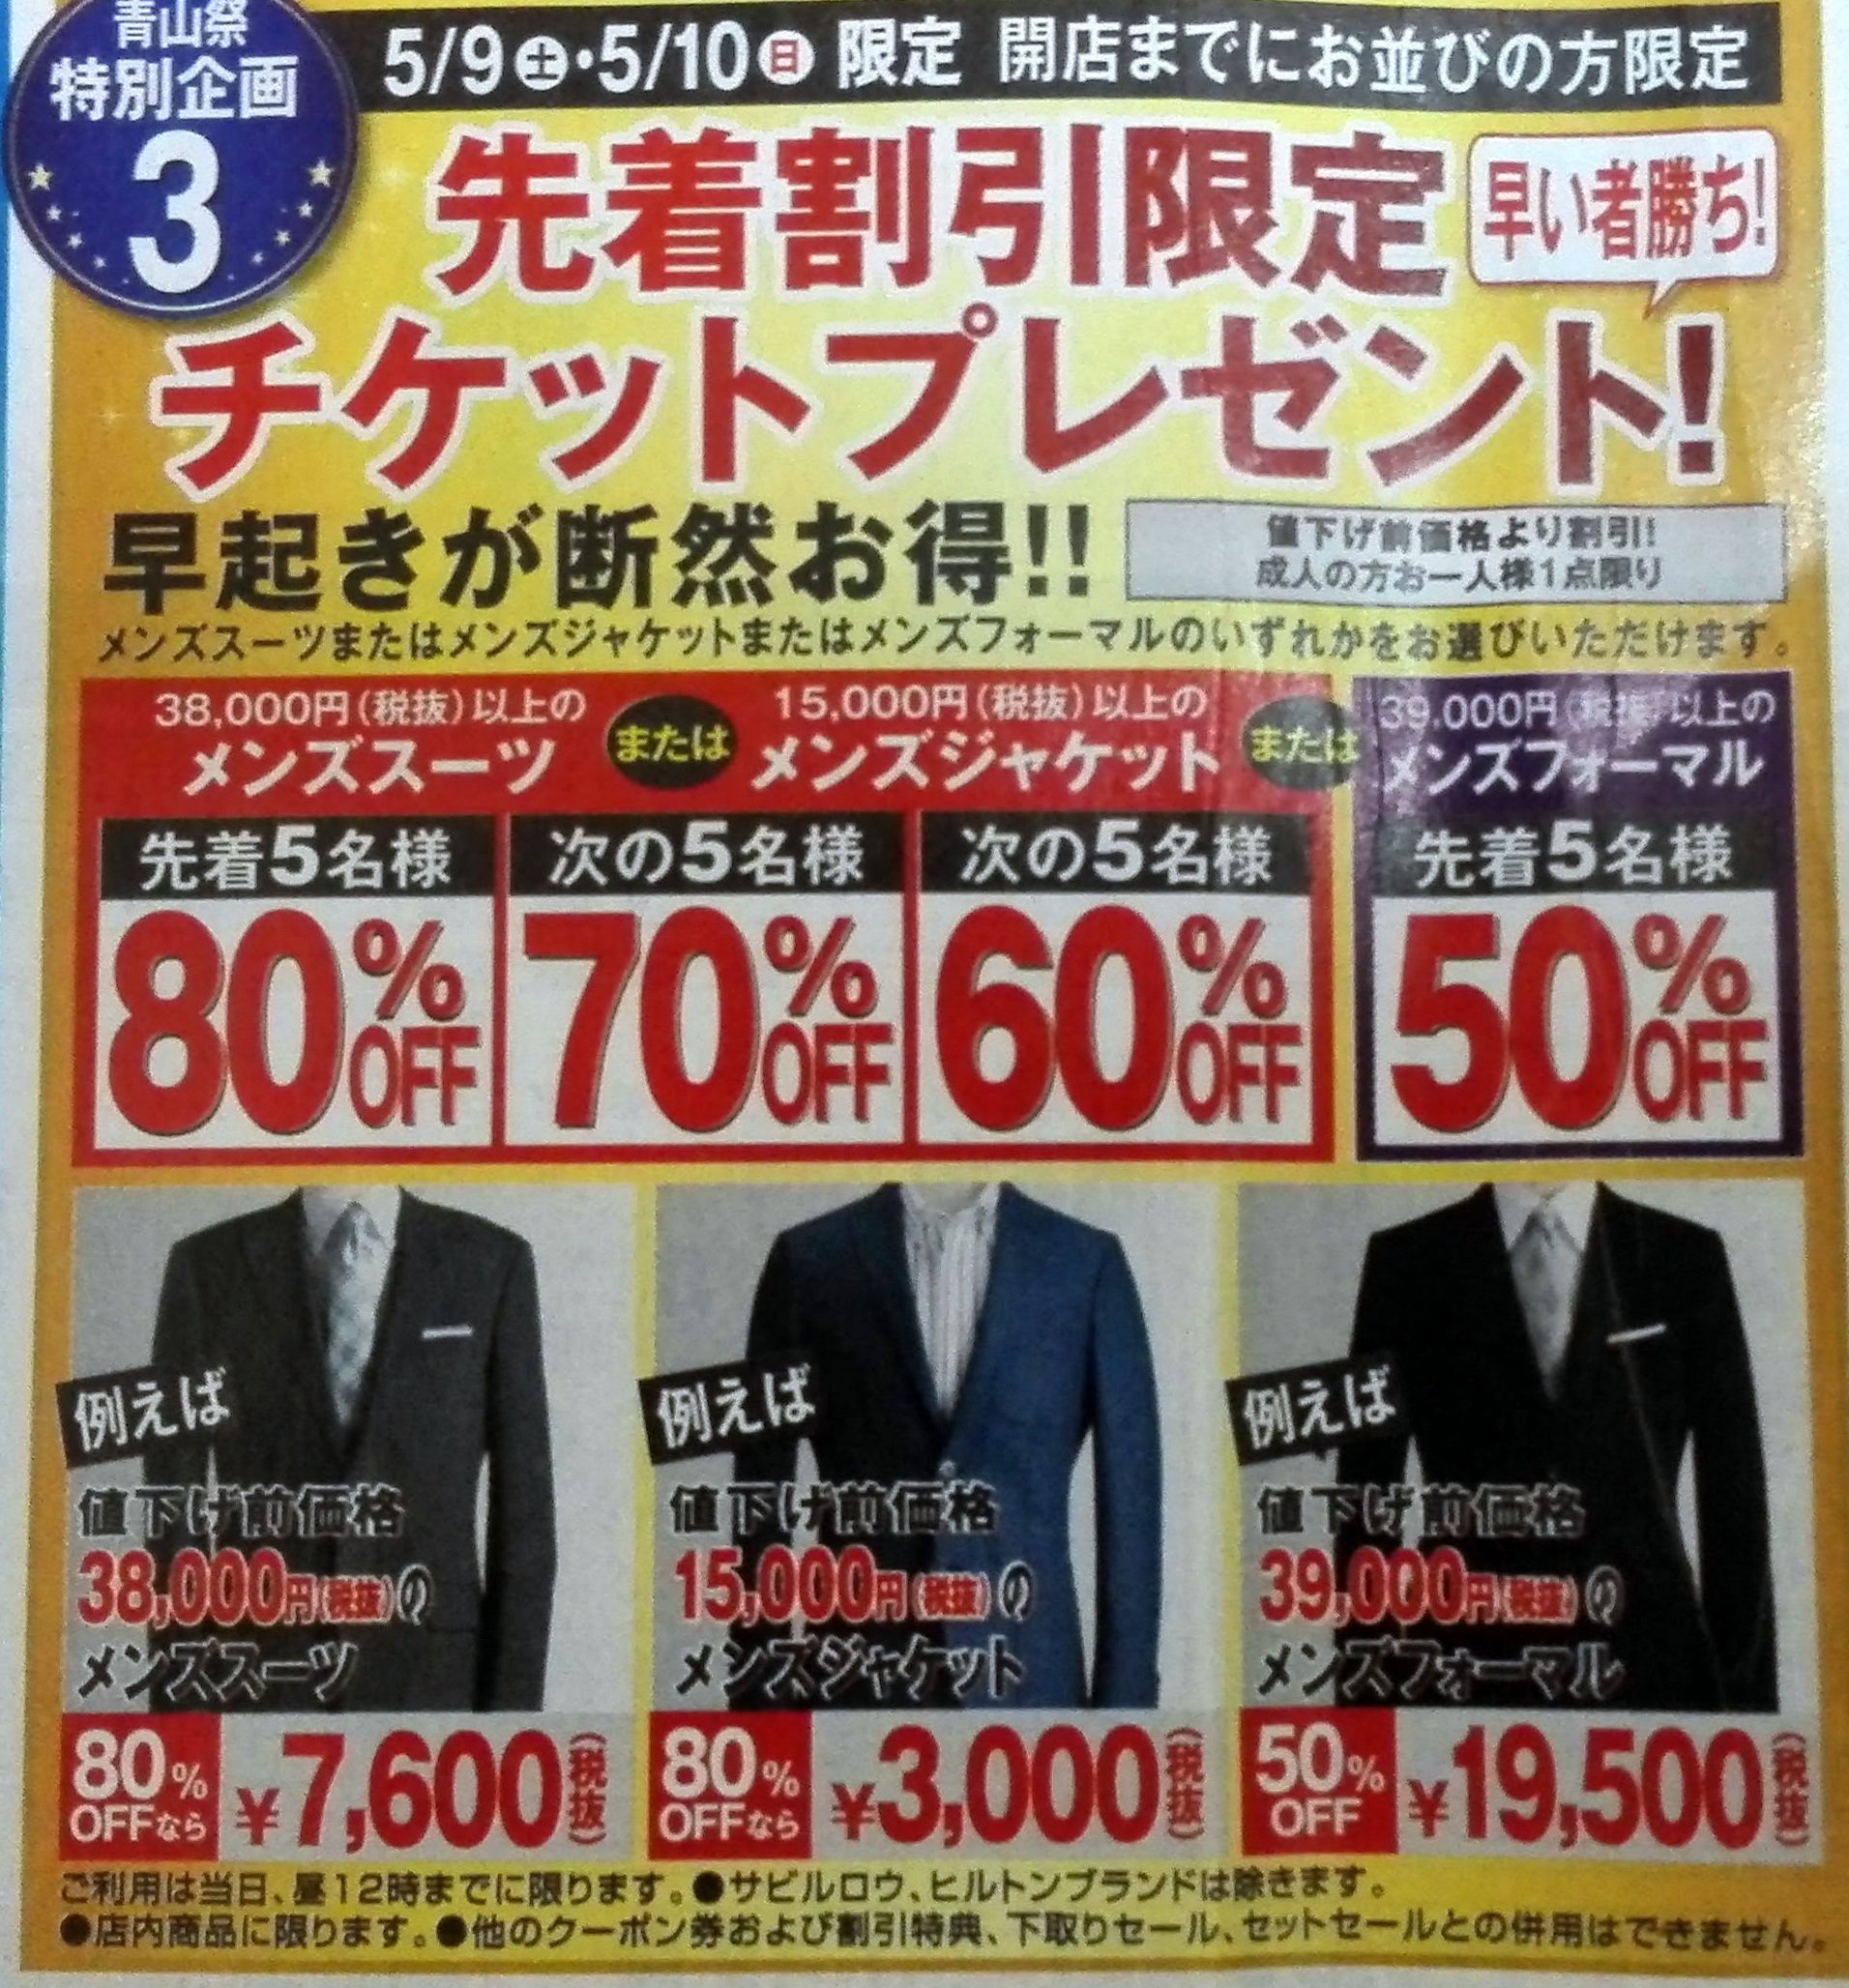 適当な価格 39000円のスーツが半額で買えるクーポンです 